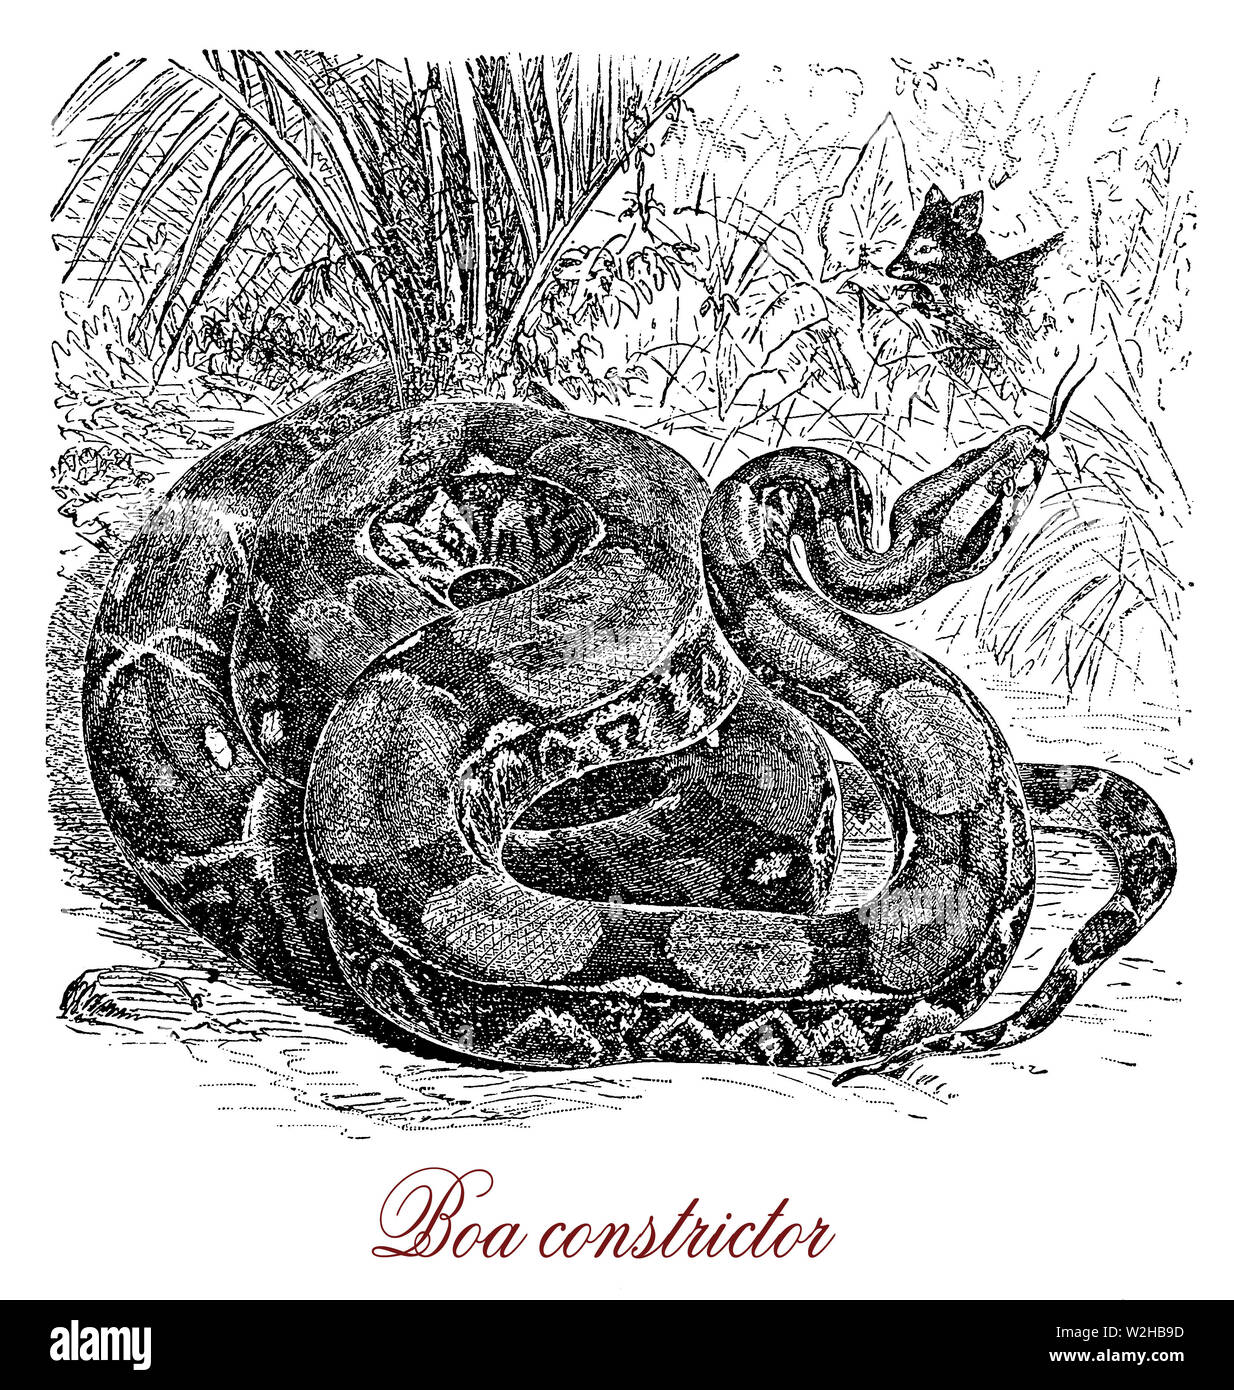 Boa constrictor est un gros serpent nocturne originaire d'Amérique latine, l'embuscade predator avec des échelles de couleur crème et brun, à quelques kilomètres seulement du camouflage dans la jungle. Banque D'Images